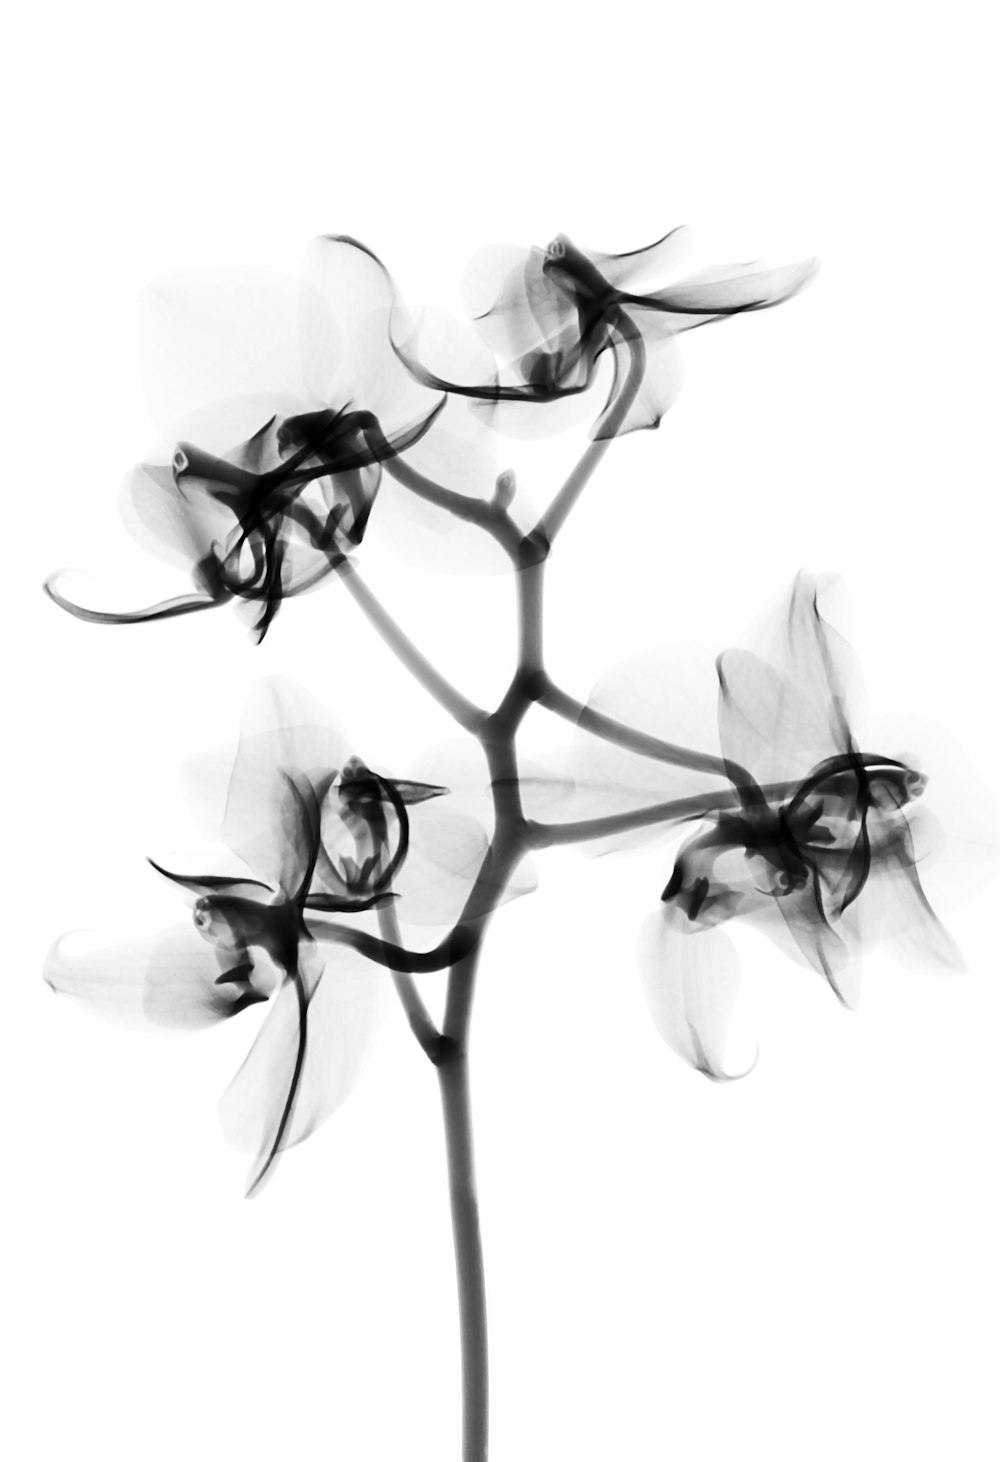 fotografia in scala di grigi dei fiori di orchidea falena